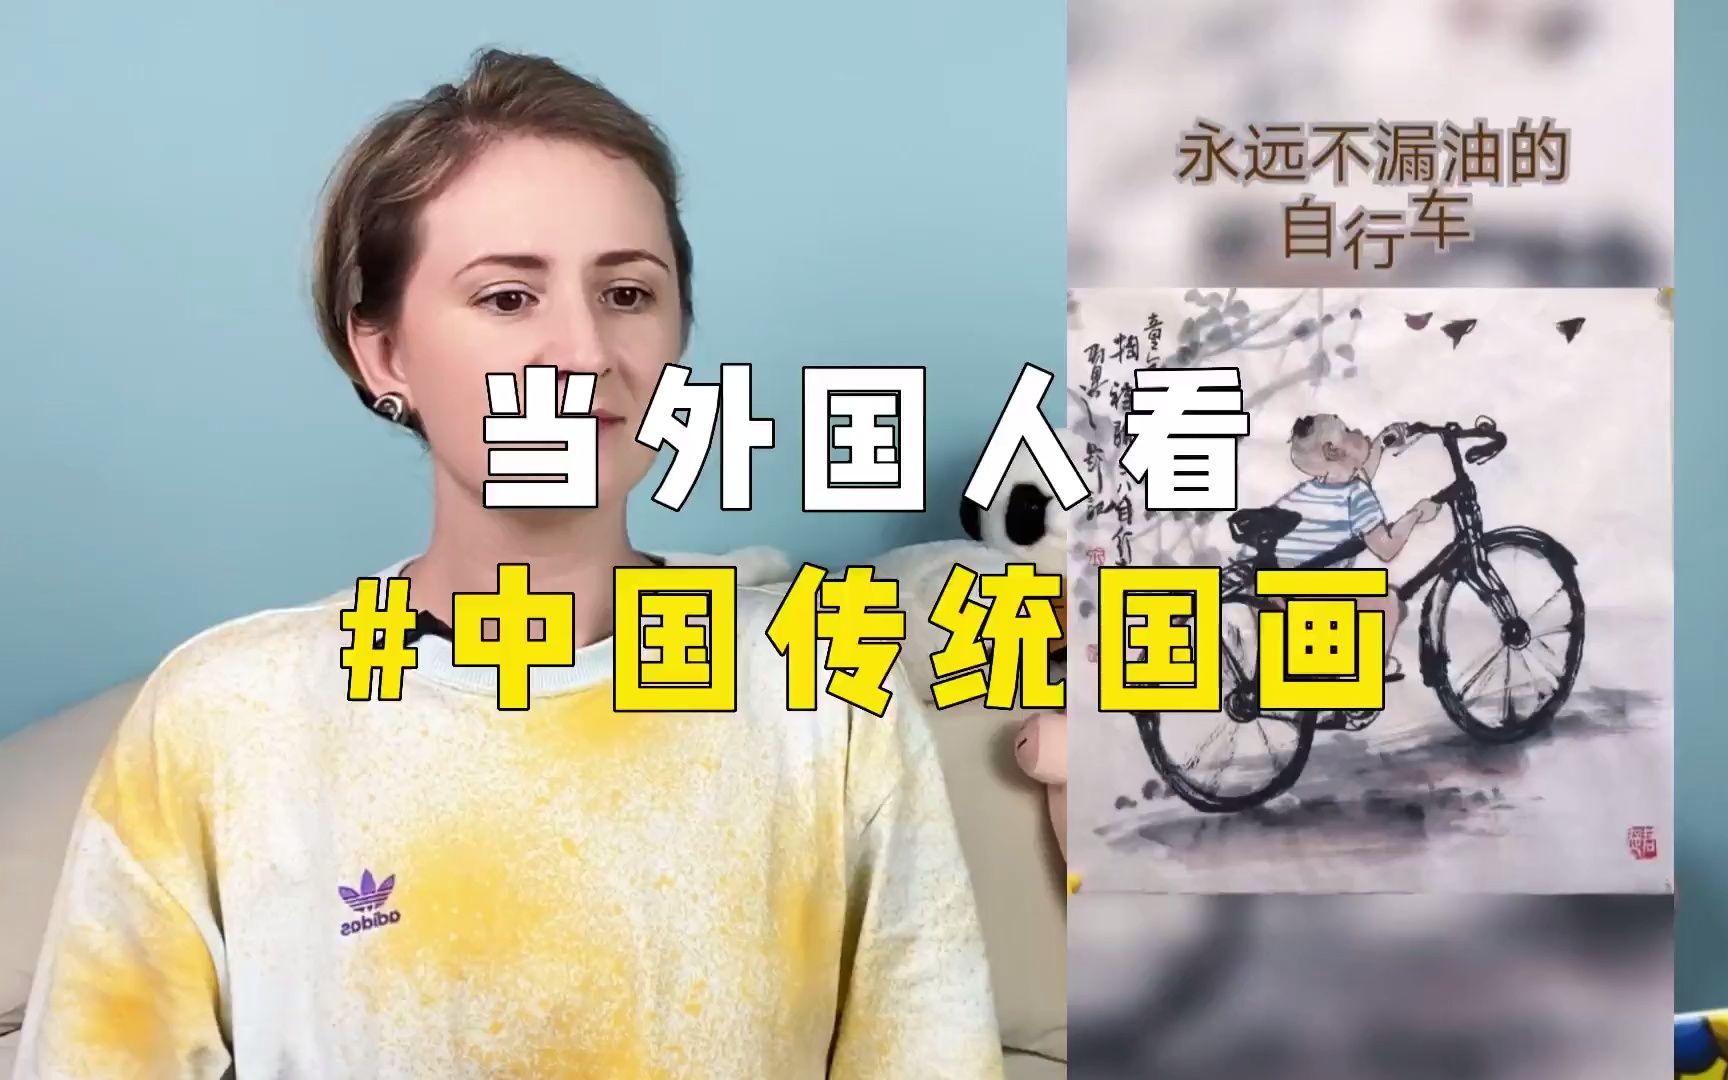 【外国人看中国】当外国人看中国传统国画